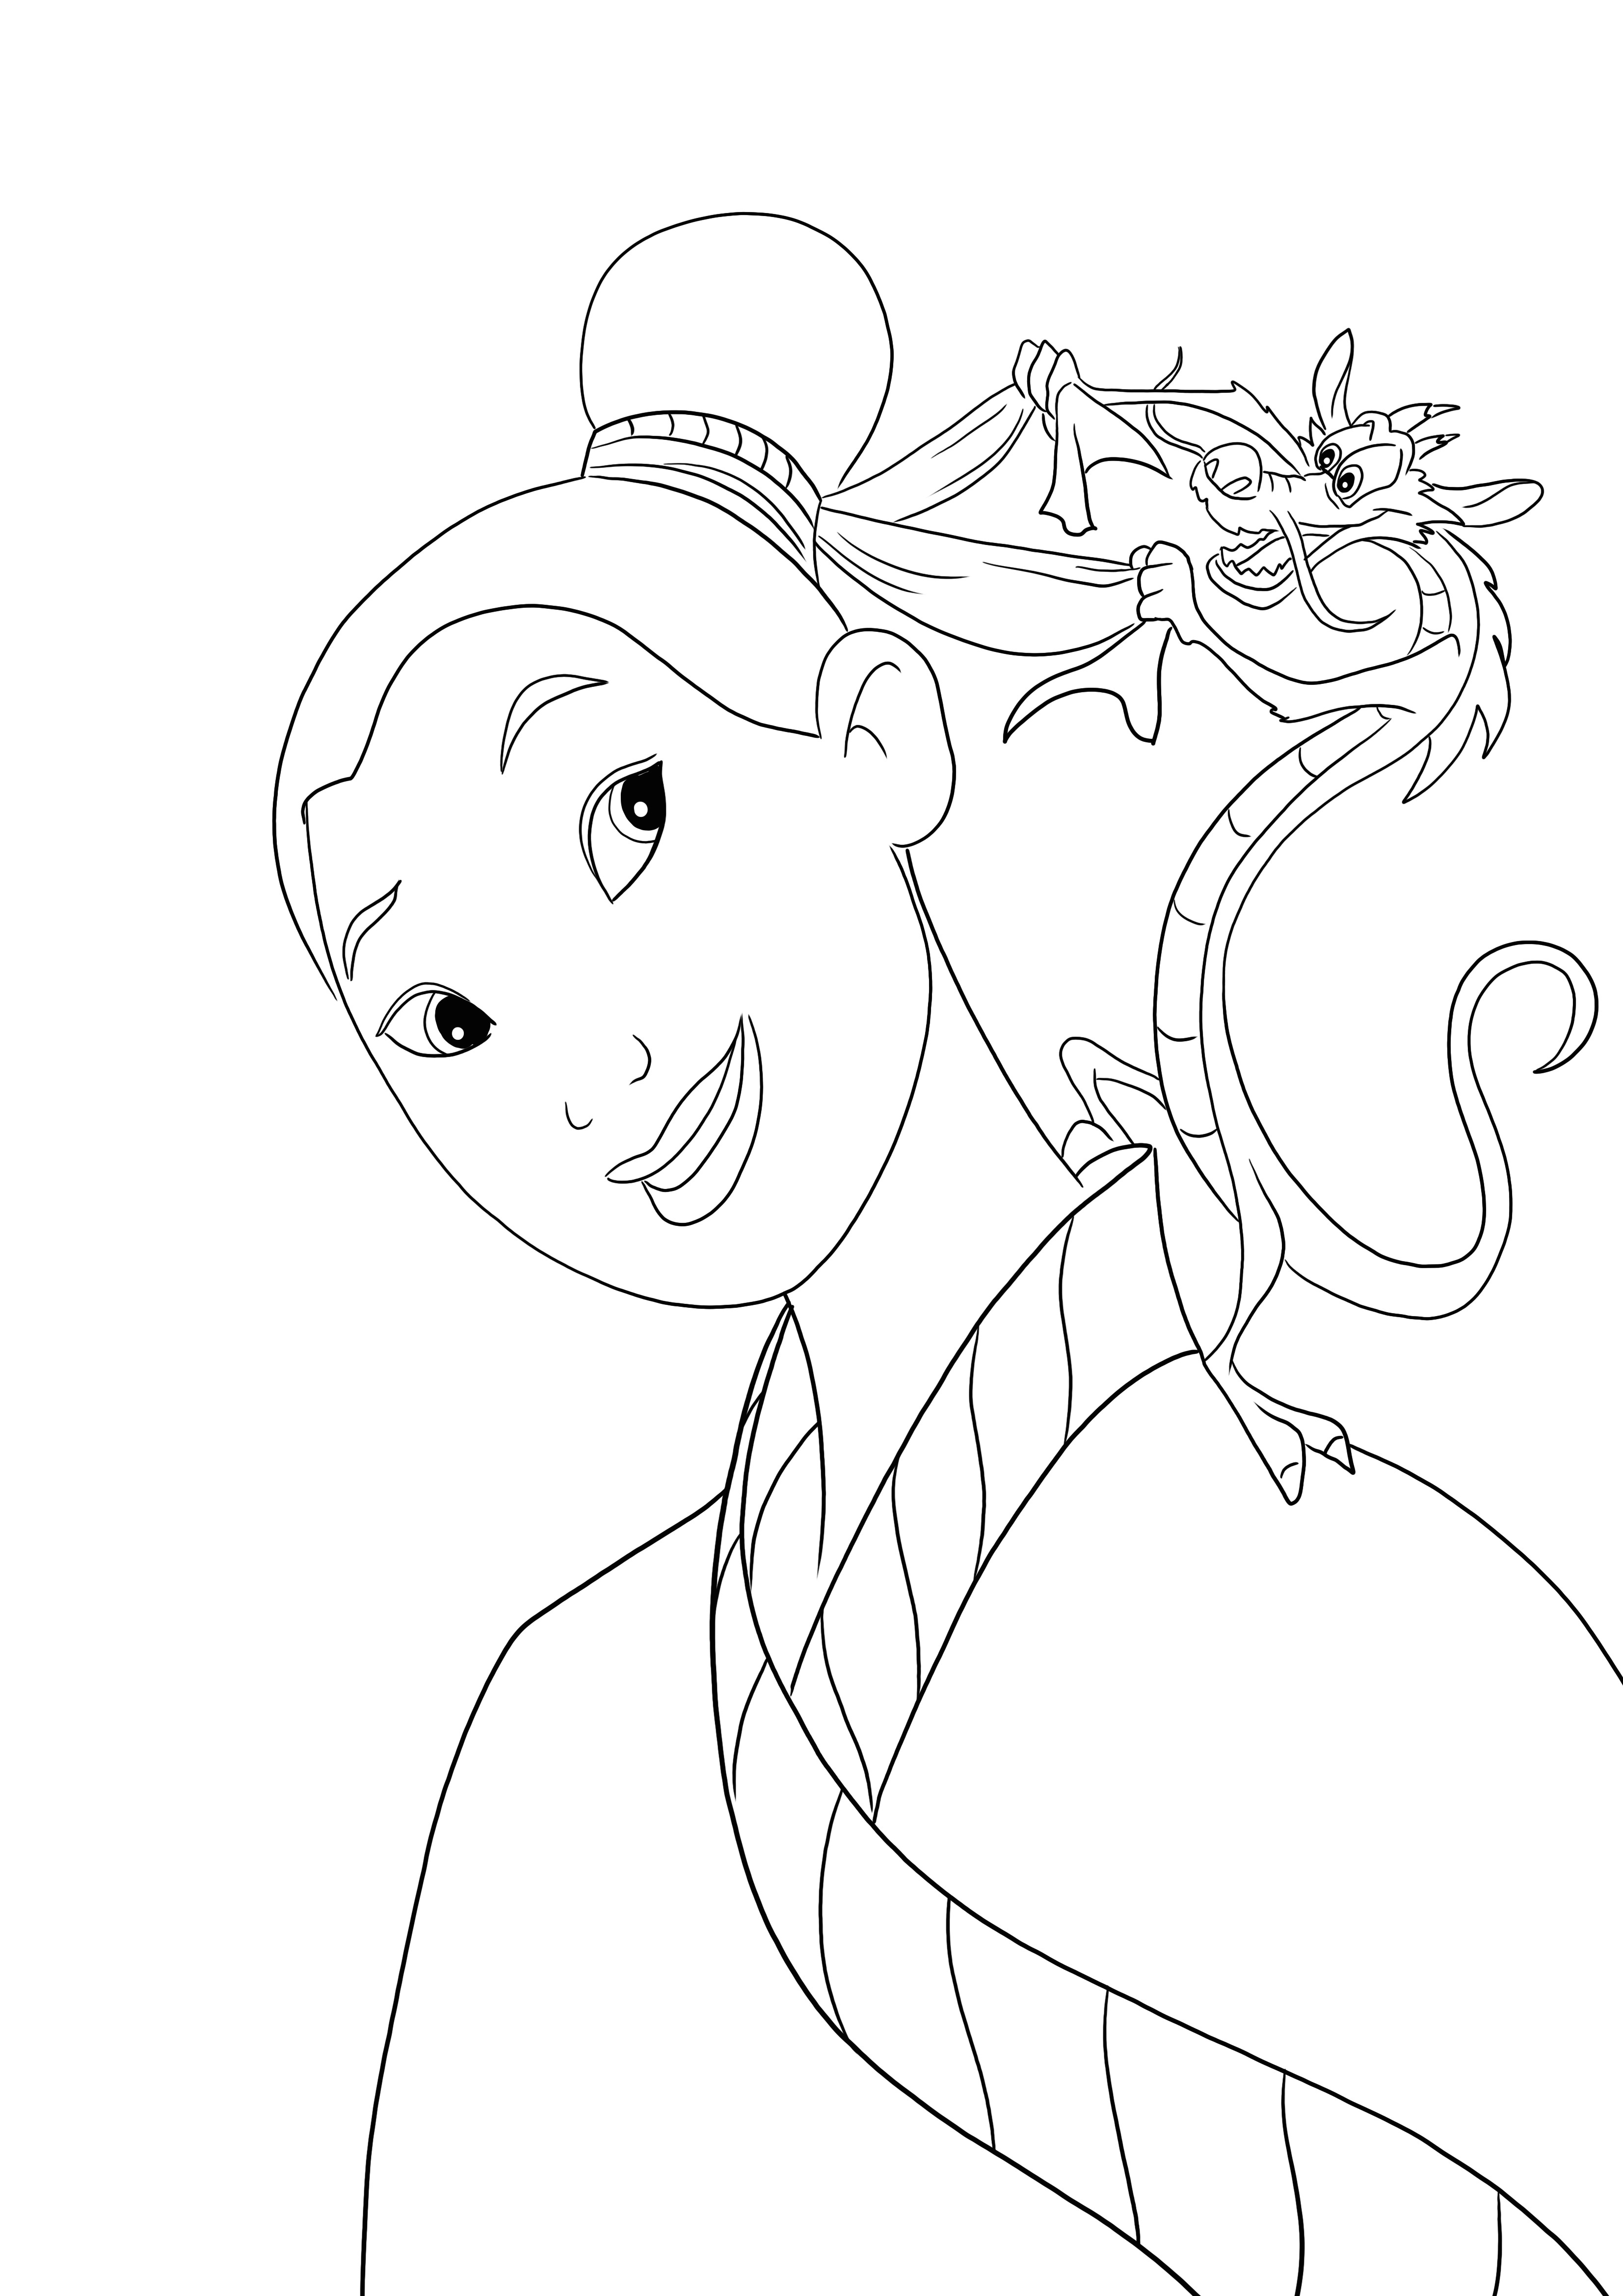 Zabawna kolorystyka Mushu robiąca włosy Mulan do pobrania za darmo i pokolorowania